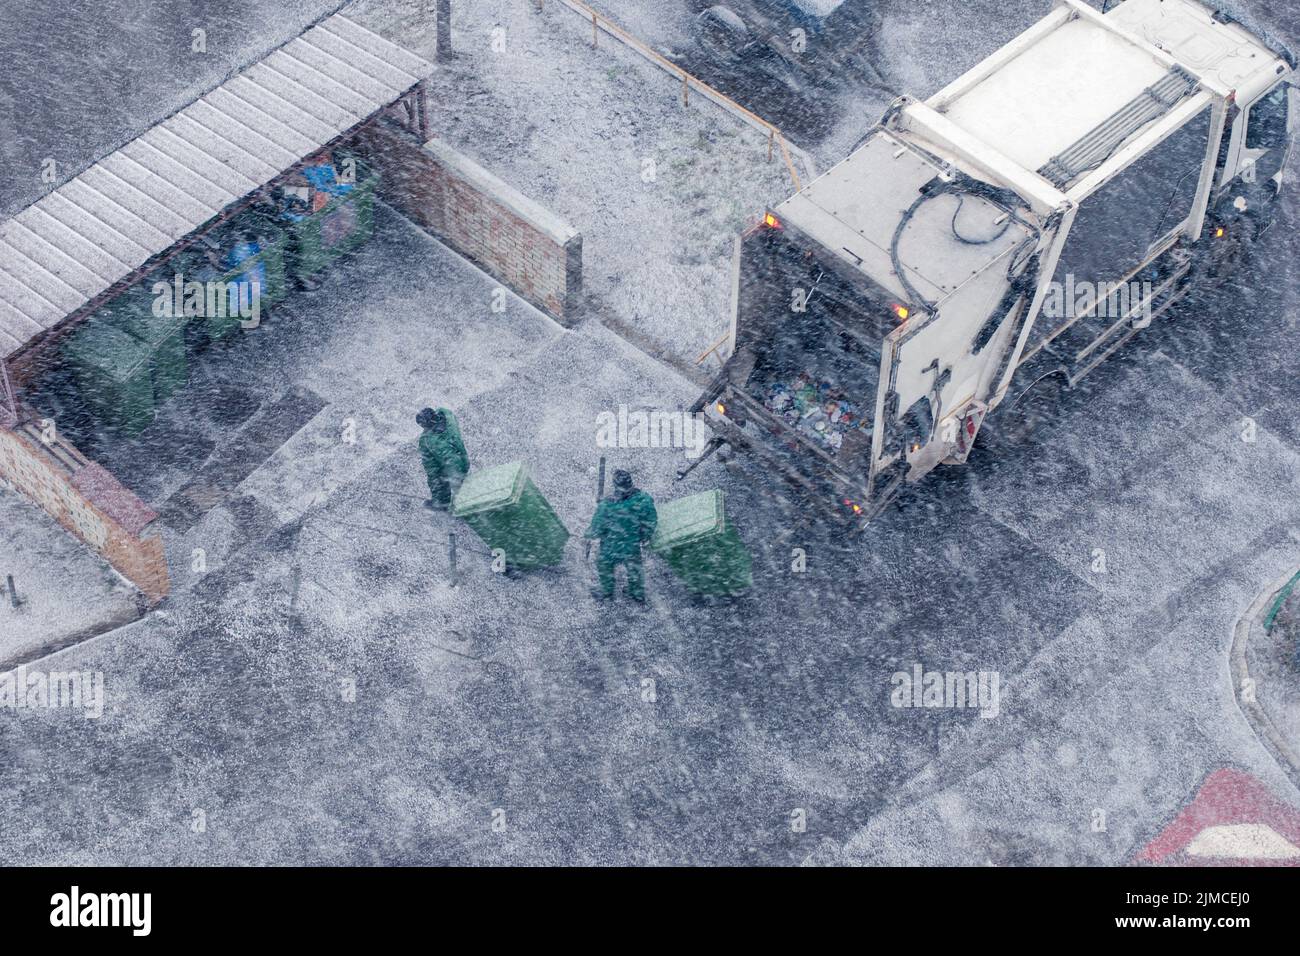 Veicolo per la raccolta rifiuti e due lavoratori nella tempesta di neve, vista dall'alto Foto Stock